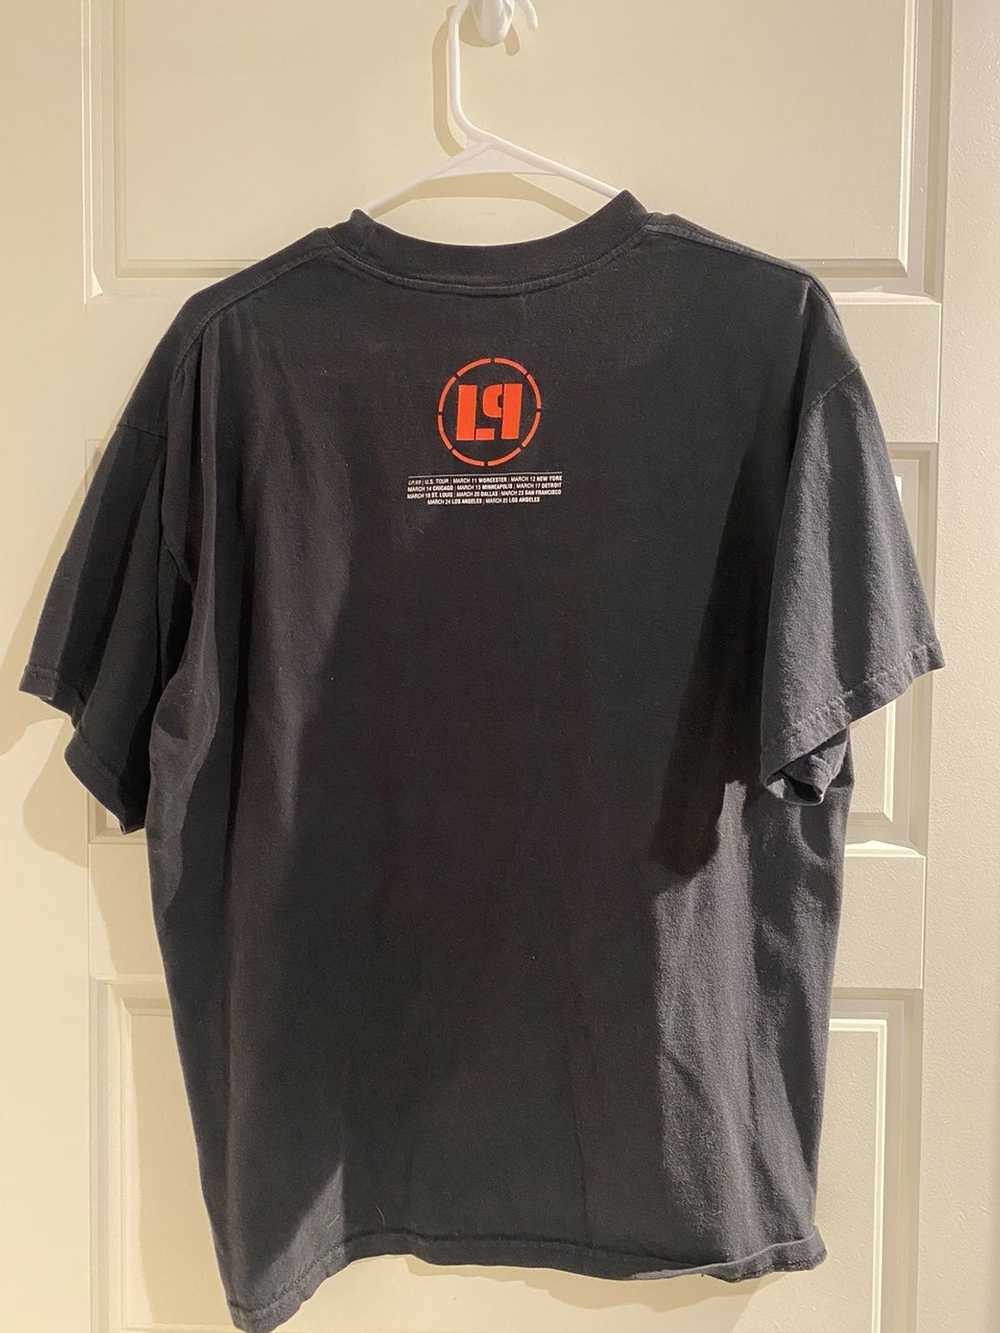 Vintage 2001 Linkin Park Tour shirt - image 2